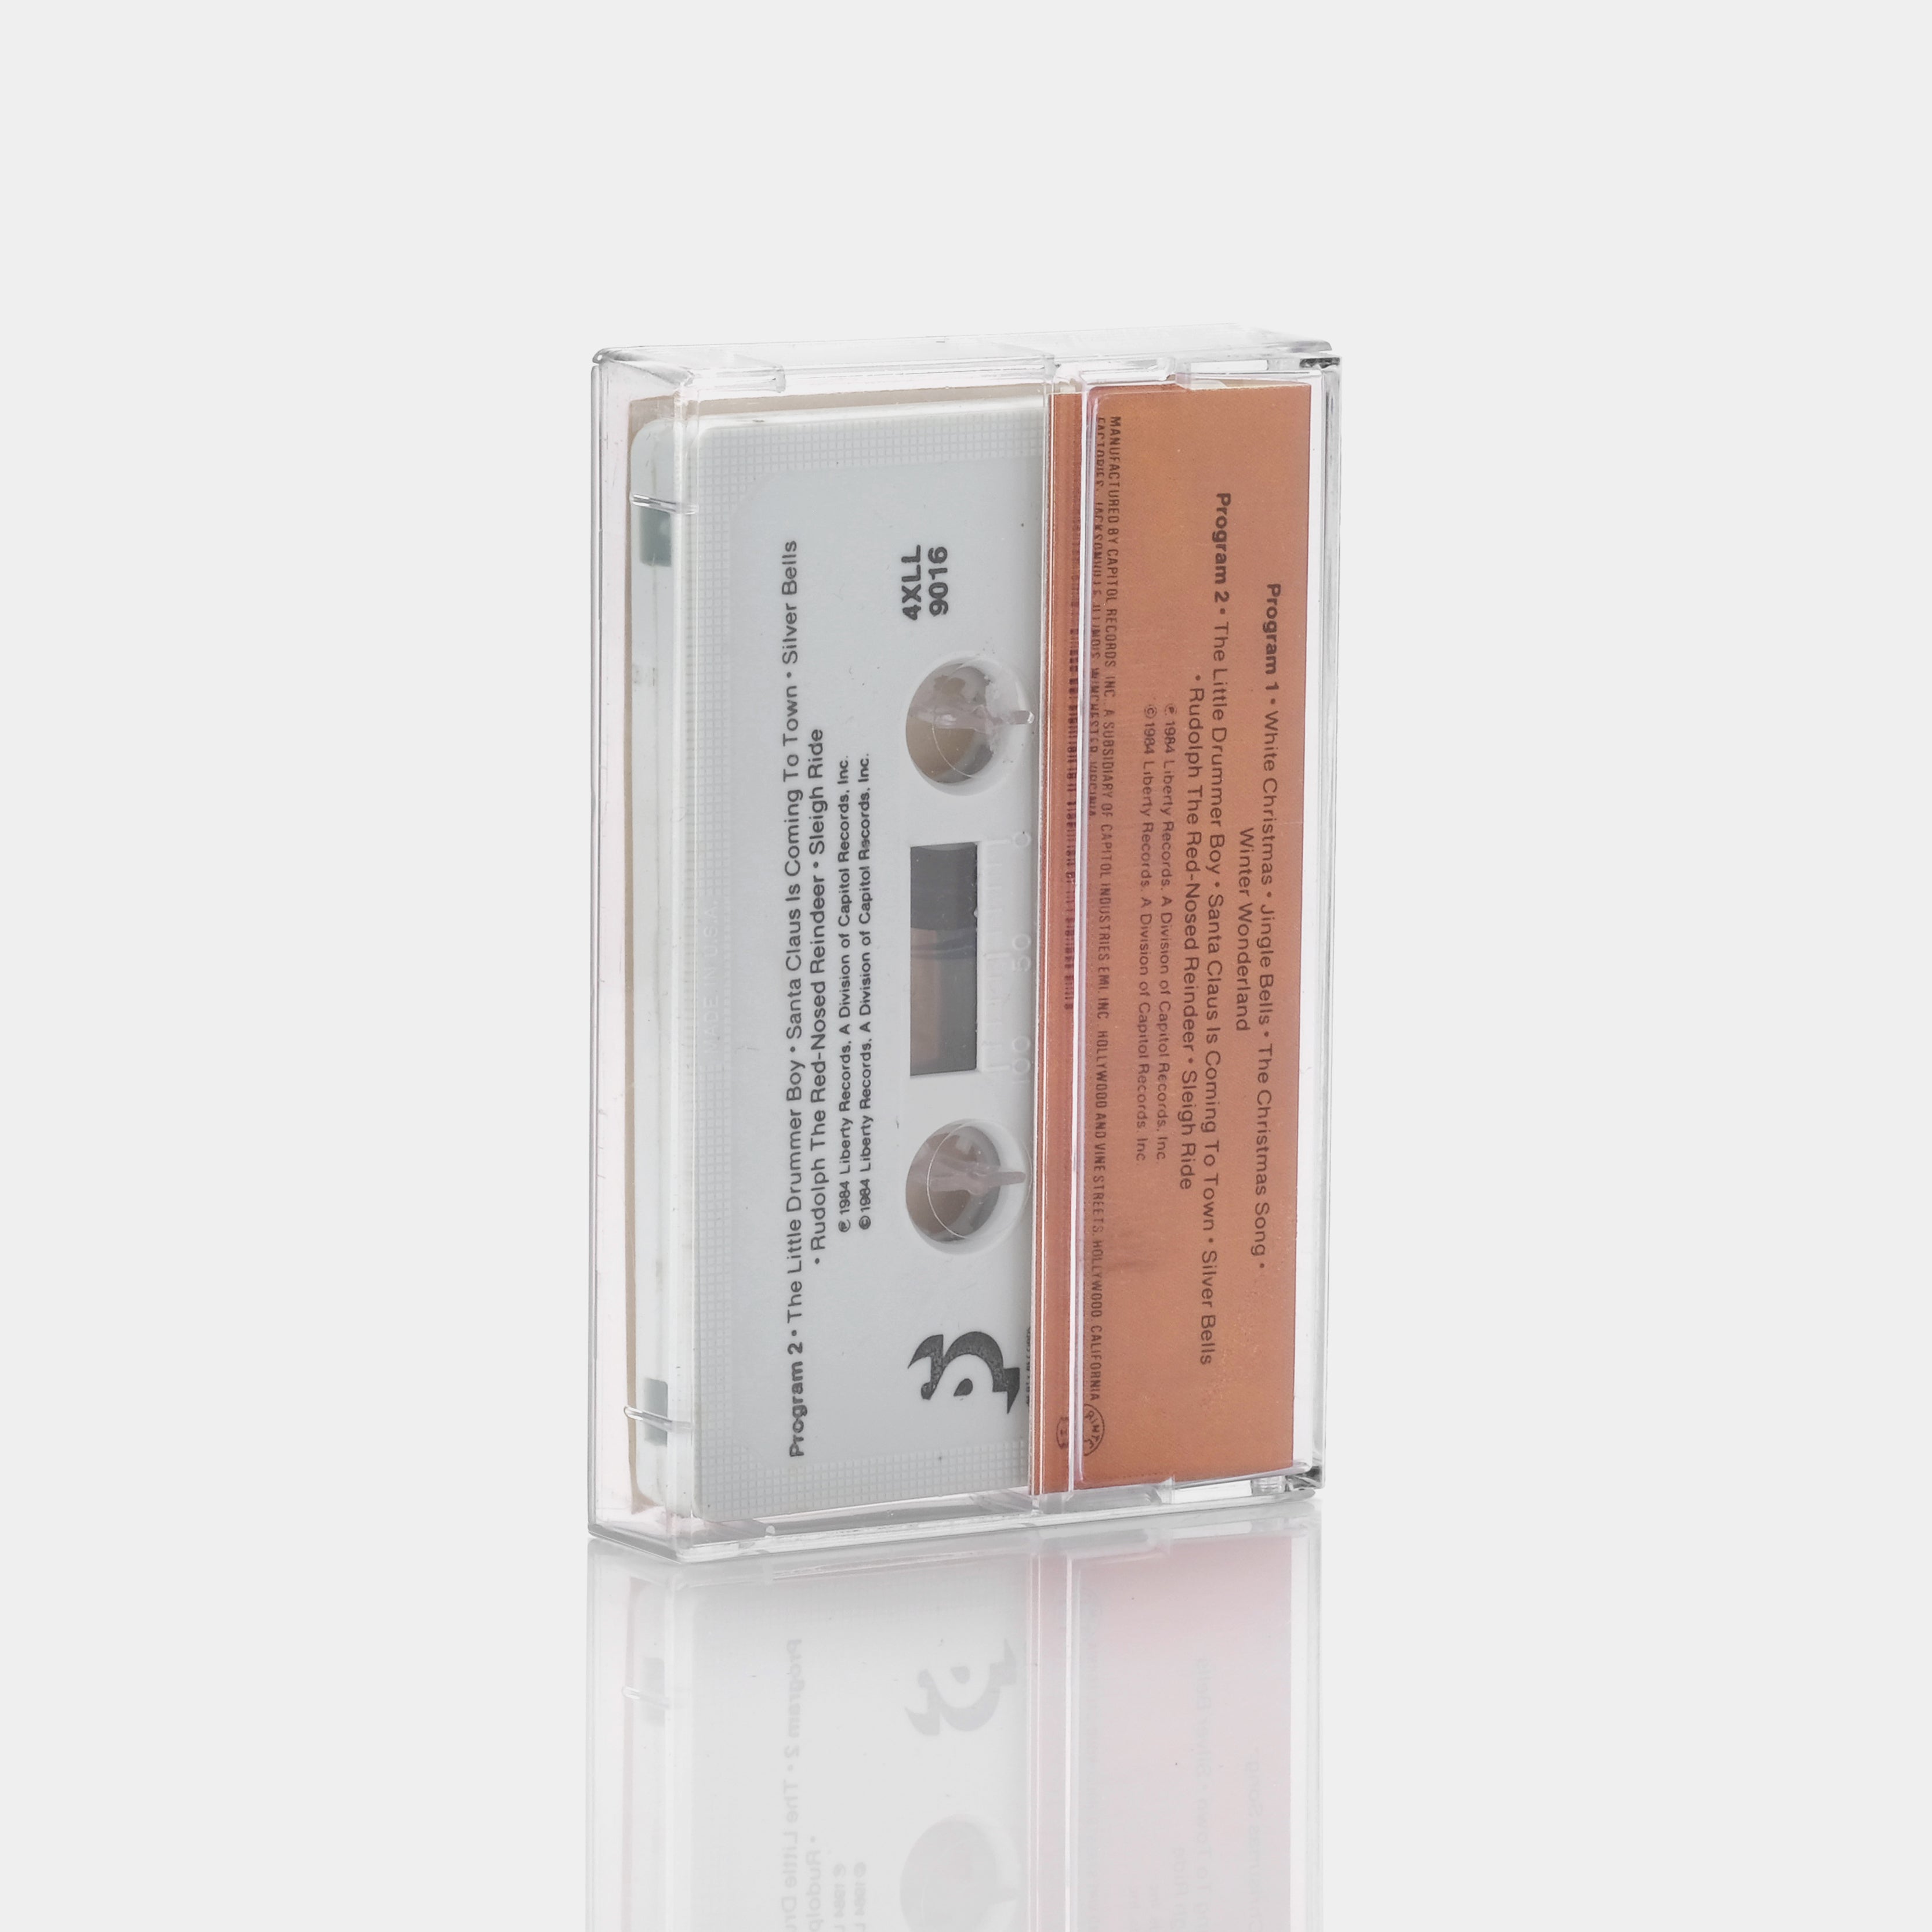 Ferrante & Teicher - A Christmas Garland Cassette Tape